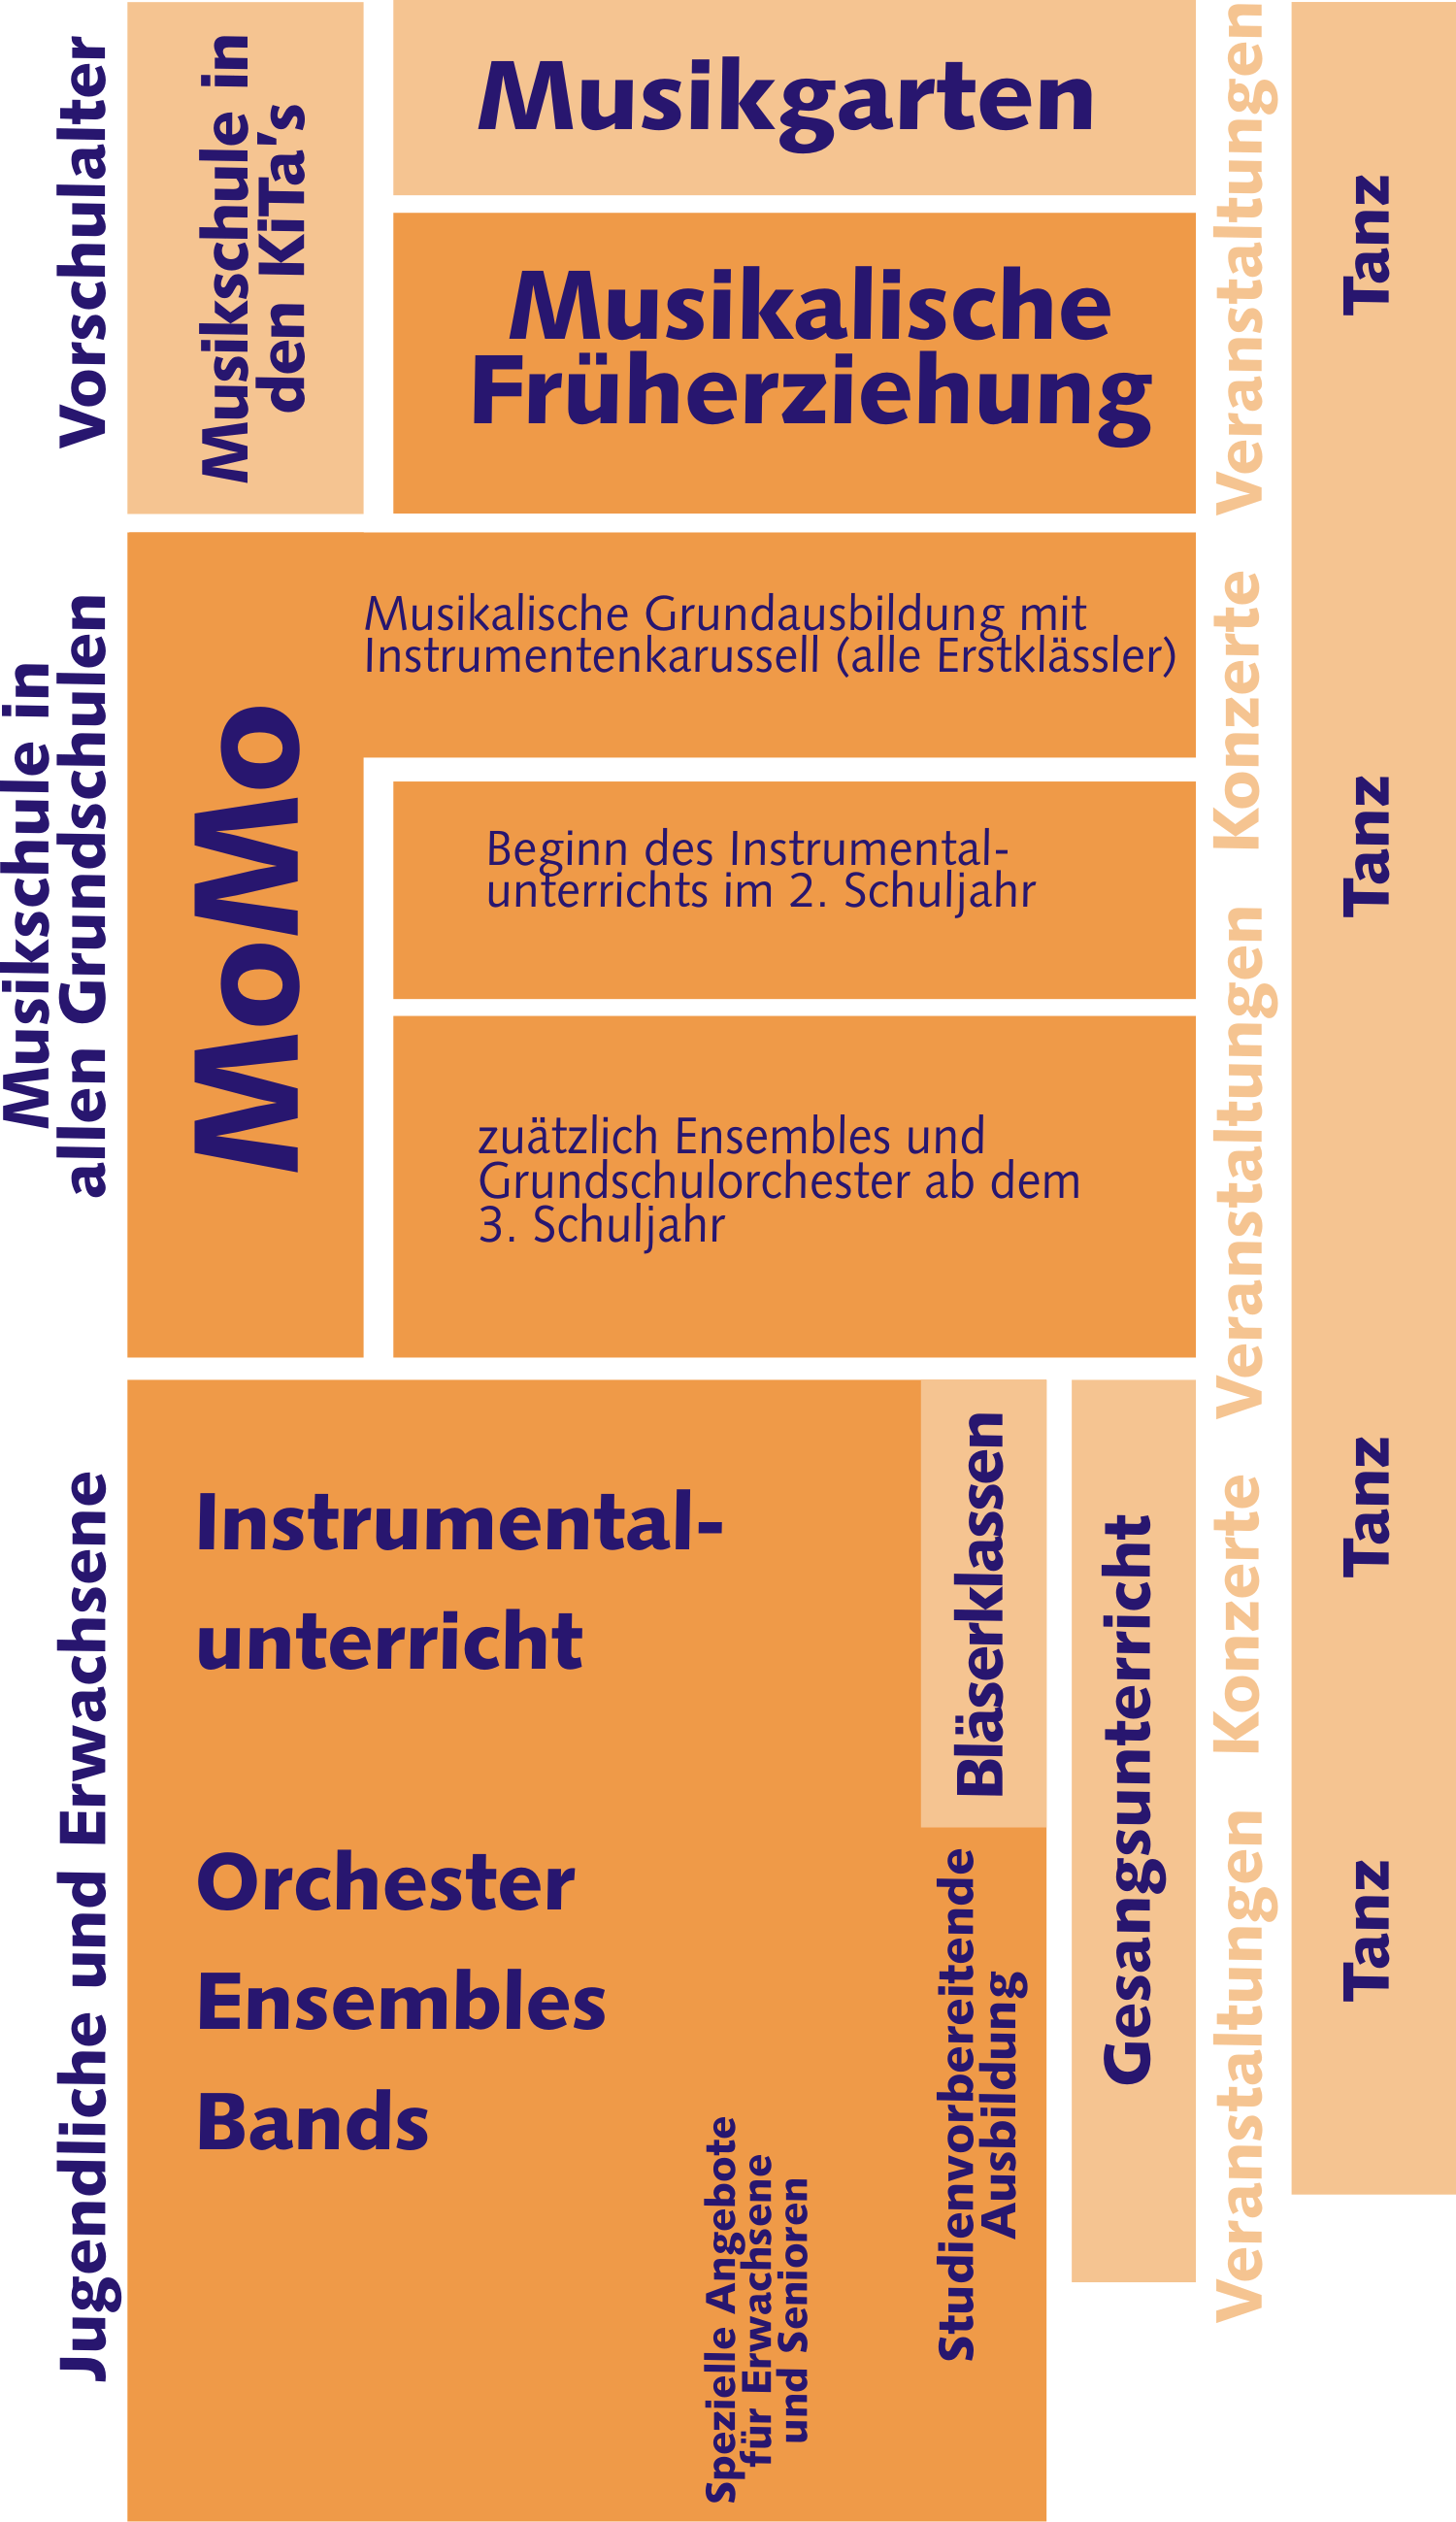 Die Grafik zeigt die verschiedenen Angebote der Musikschule aufgeteilt nach Altersgruppen und Angeboten